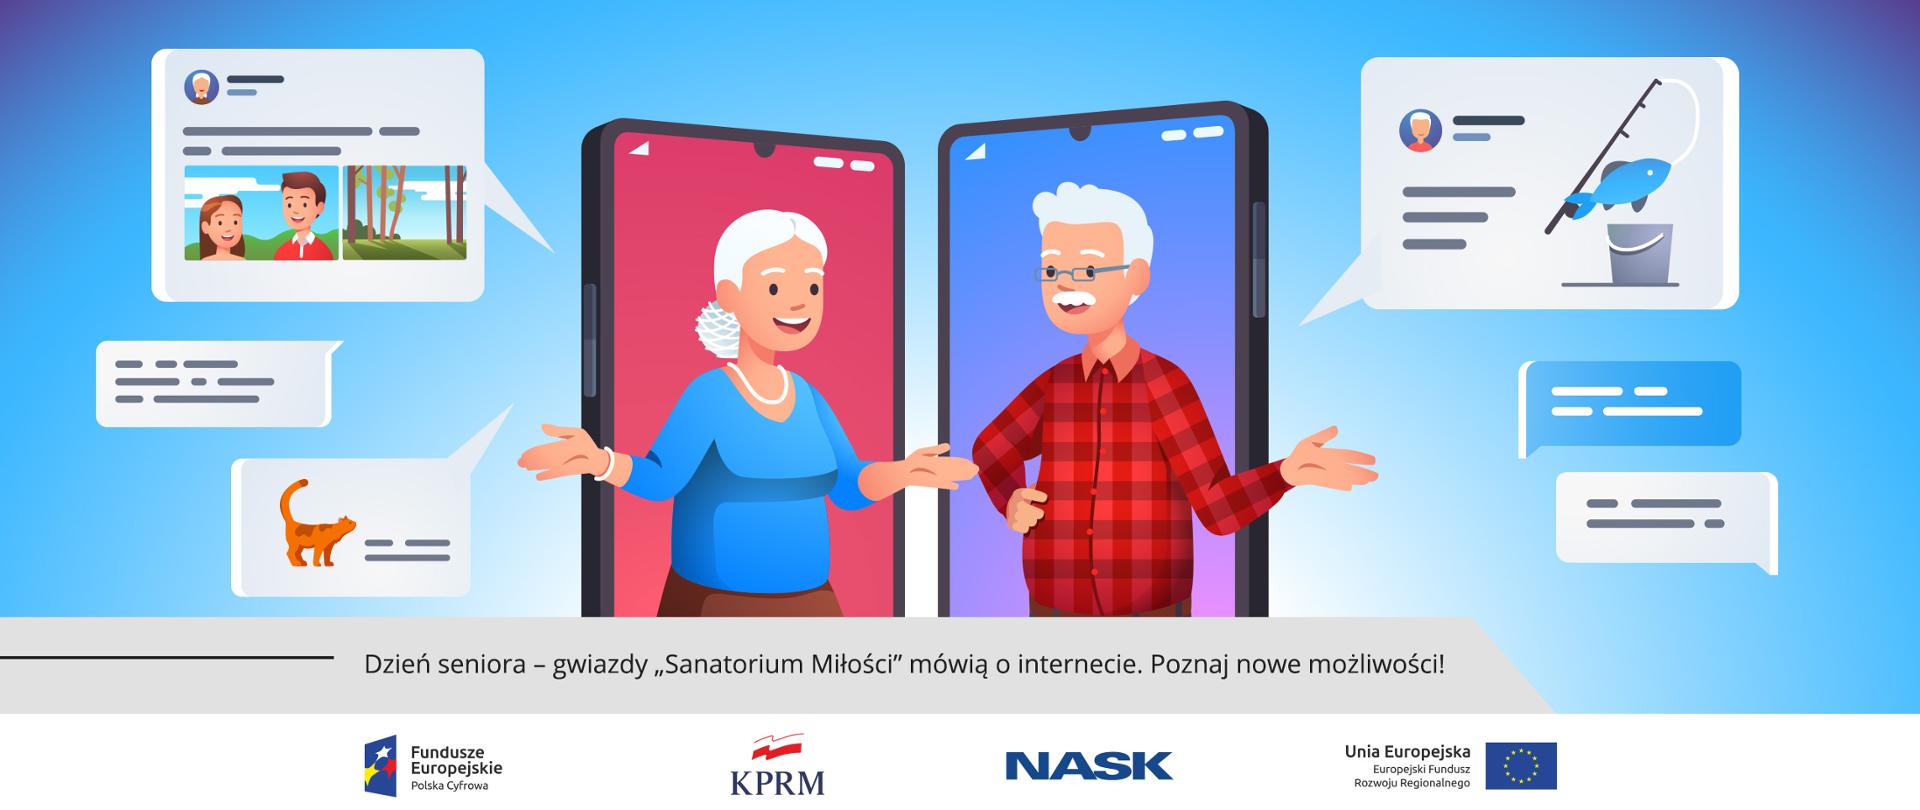 Grafika wektorowa - dwoje uśmiechniętych seniorów (kobieta i mężczyzna) na tle telefonów komórkowych, wokół nich ikony symbolizujące internetowe wiadomości i połączenia.